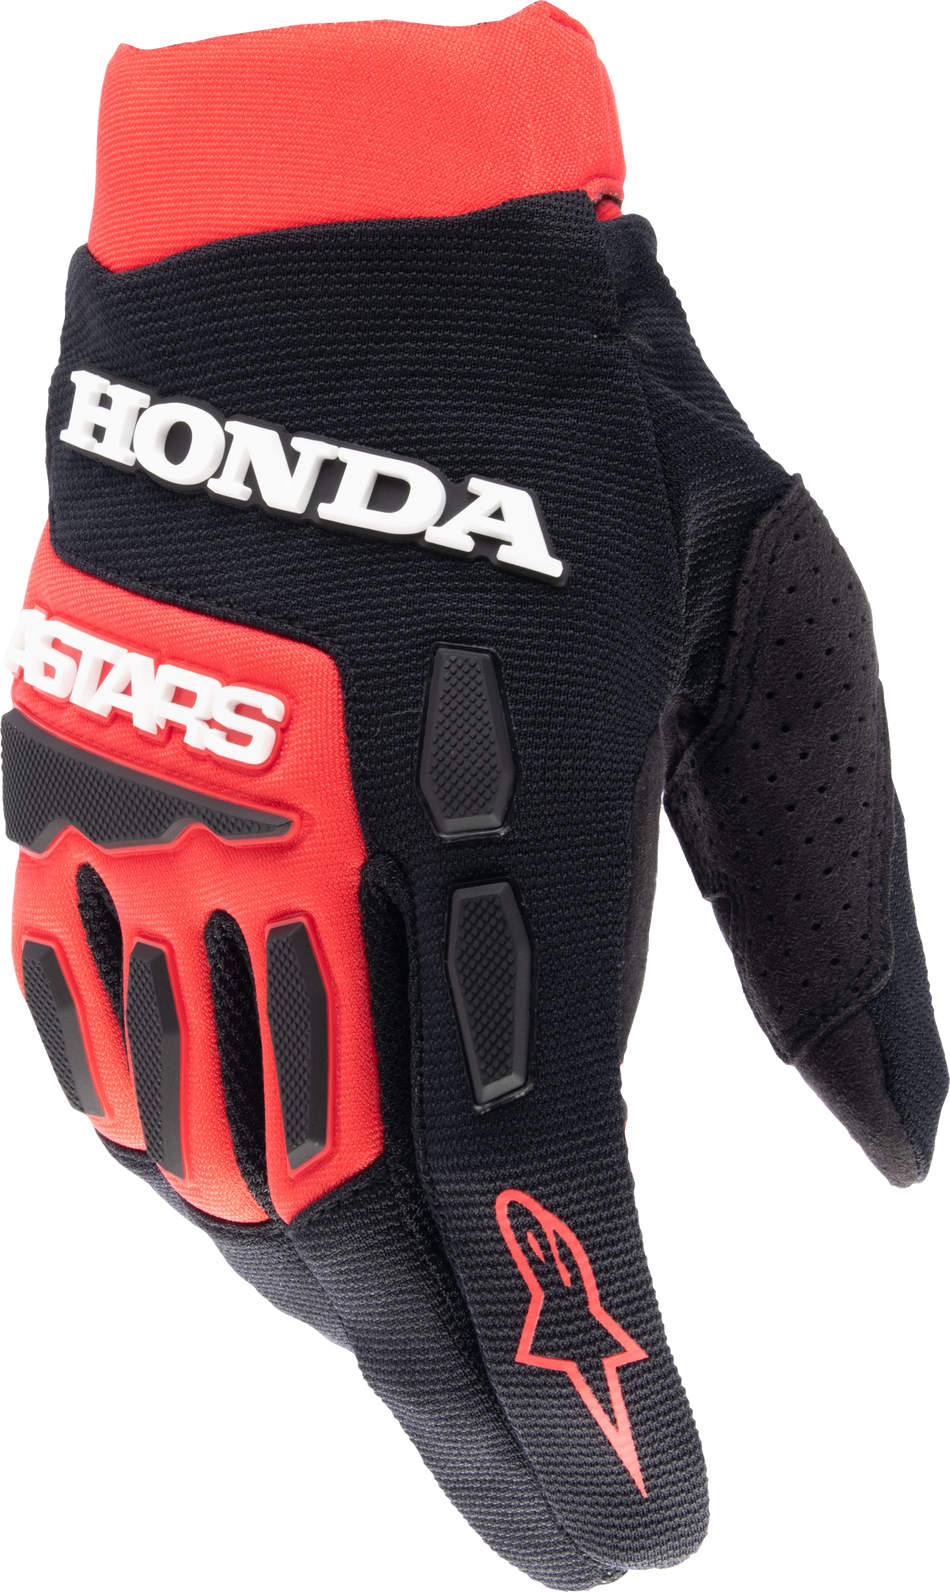 ALPINESTARS Honda Full Bore Gloves Bright Red/Black 3x 3563823-3031-3XL